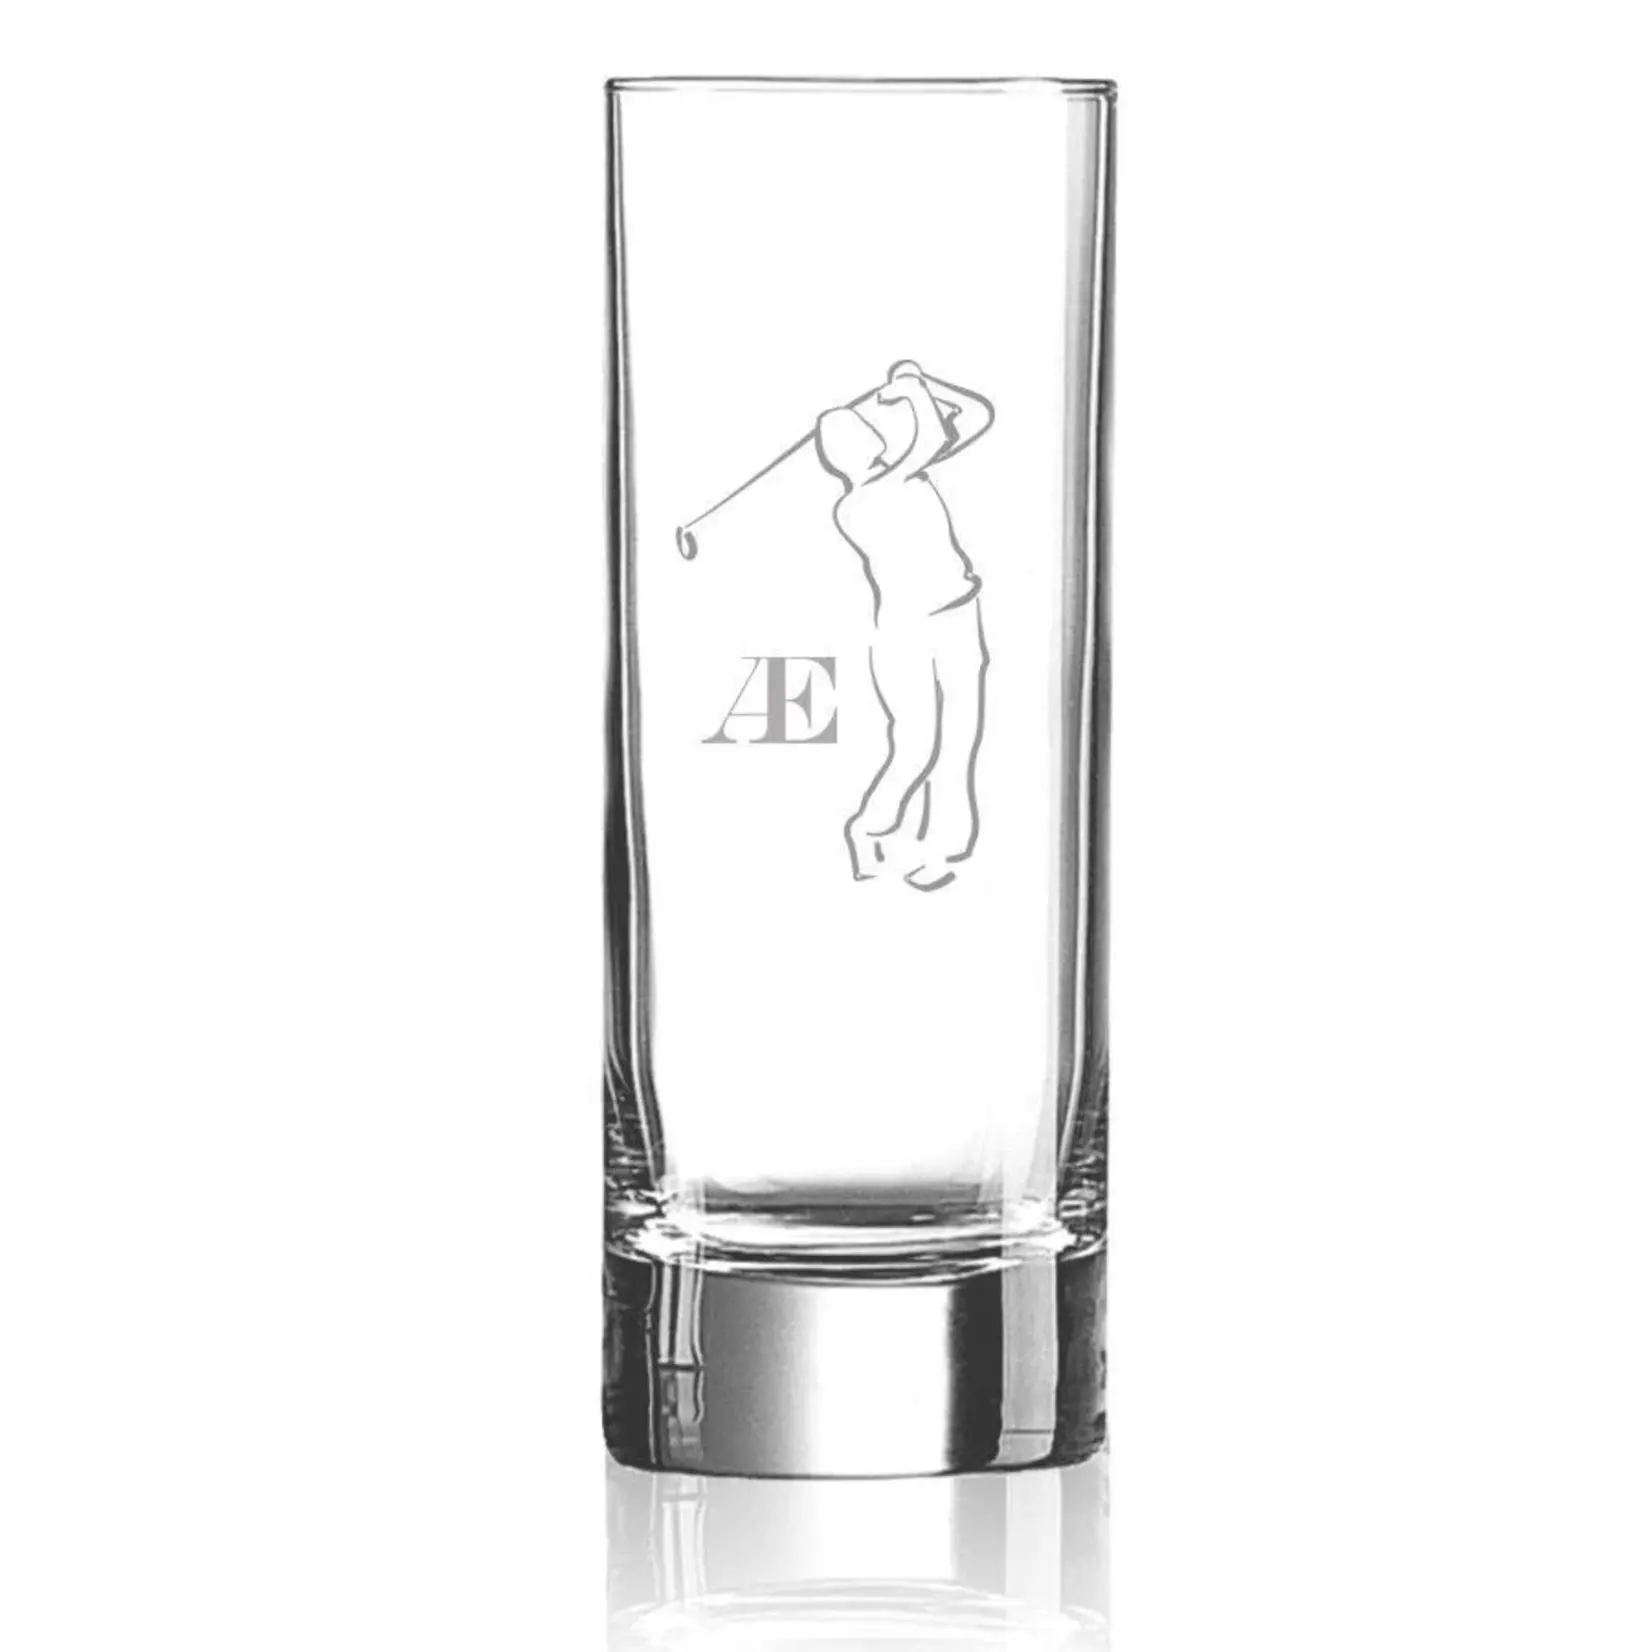 Longdrinkglas met gravering logo